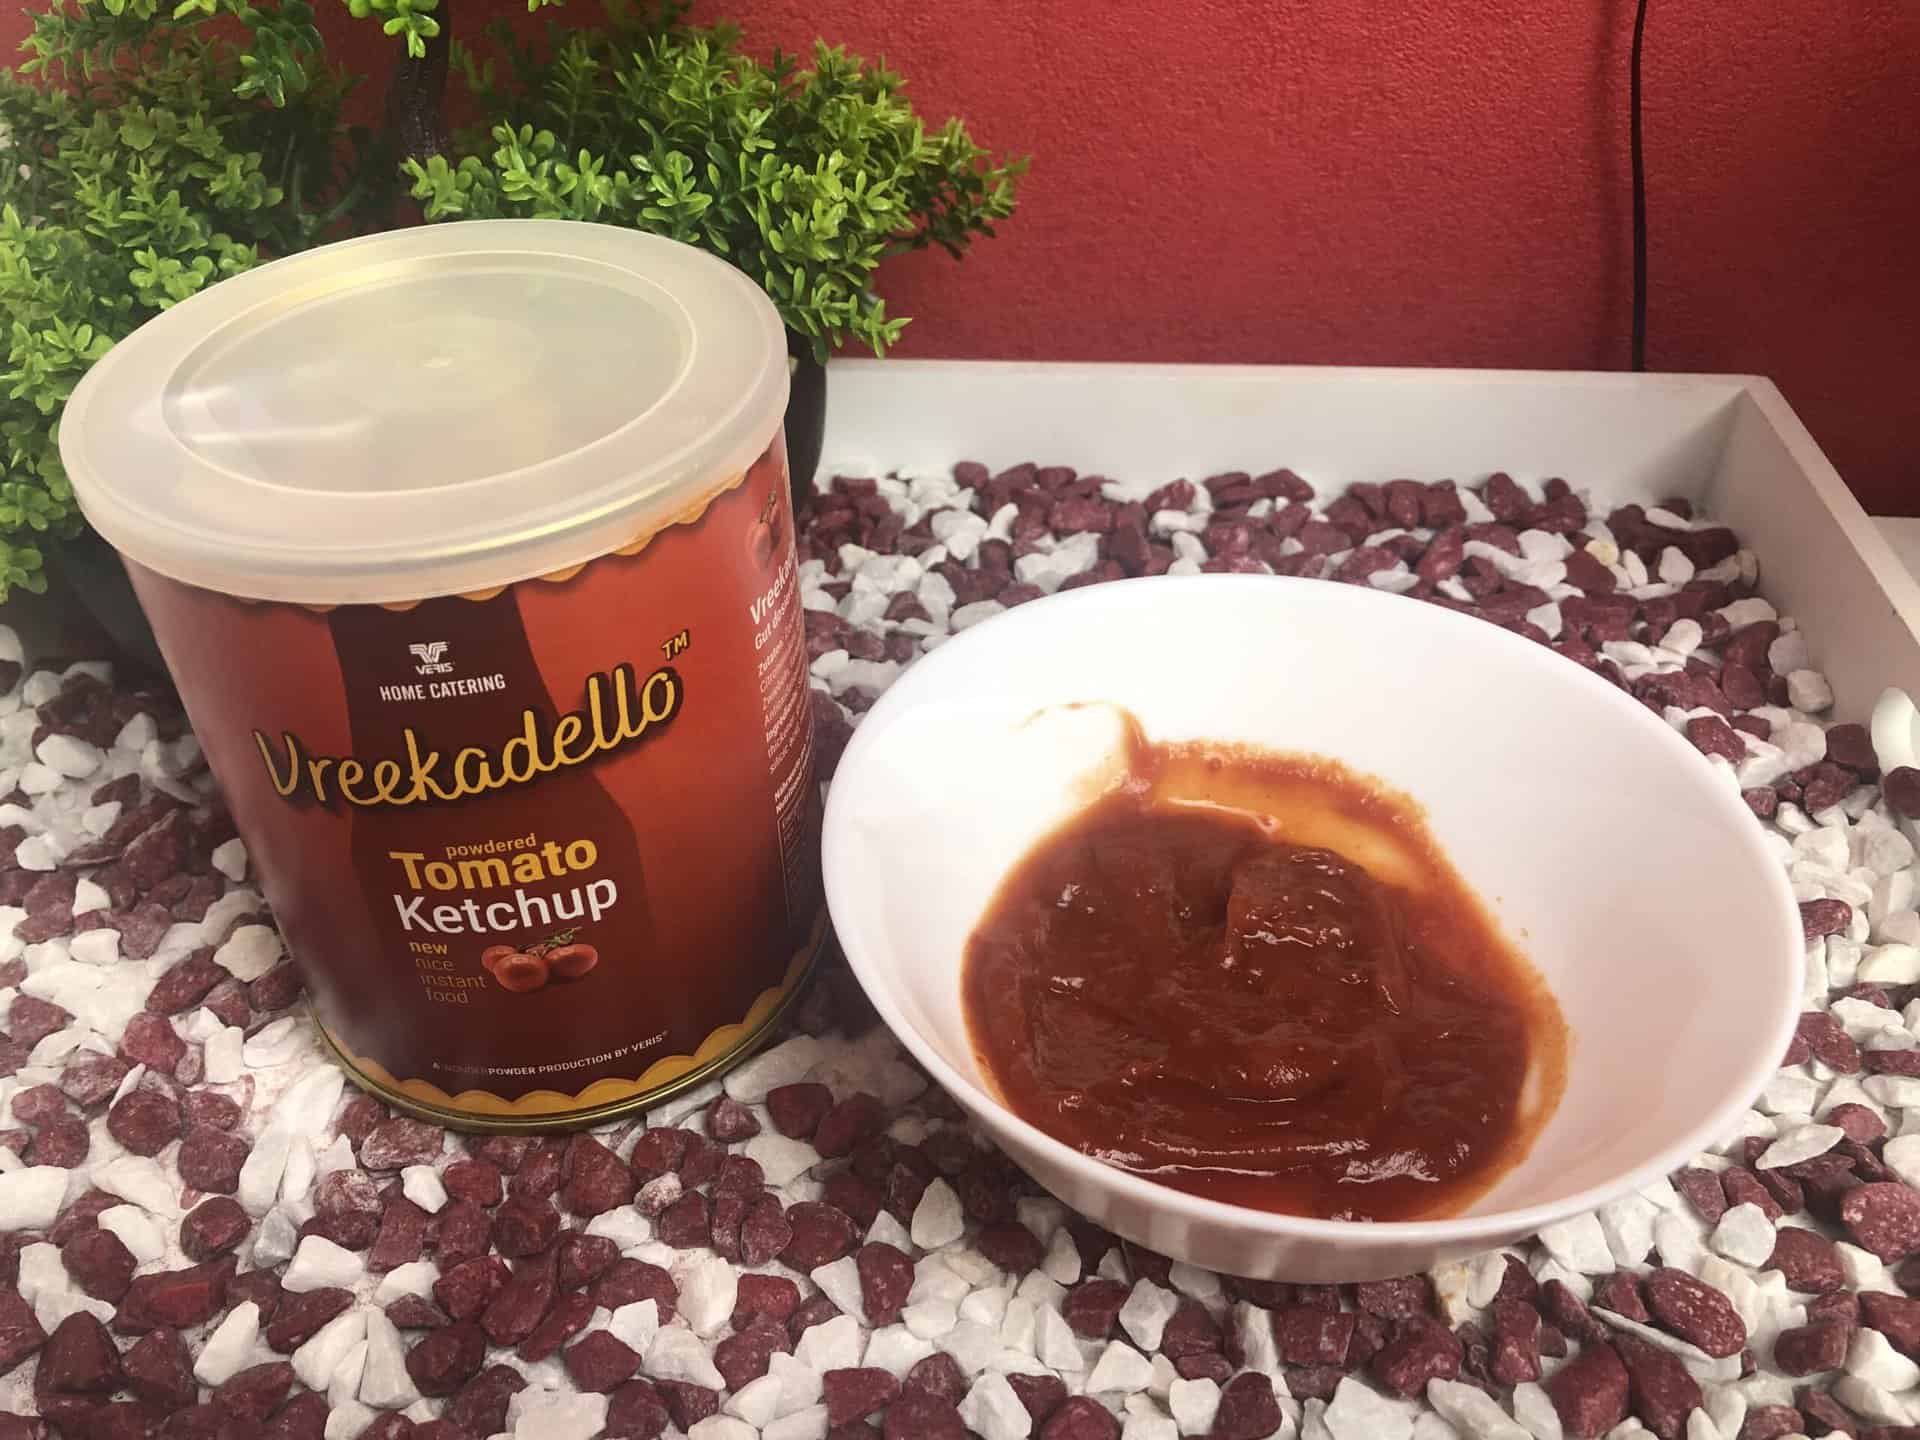 Das Vreekadello Ketchup von Conserva